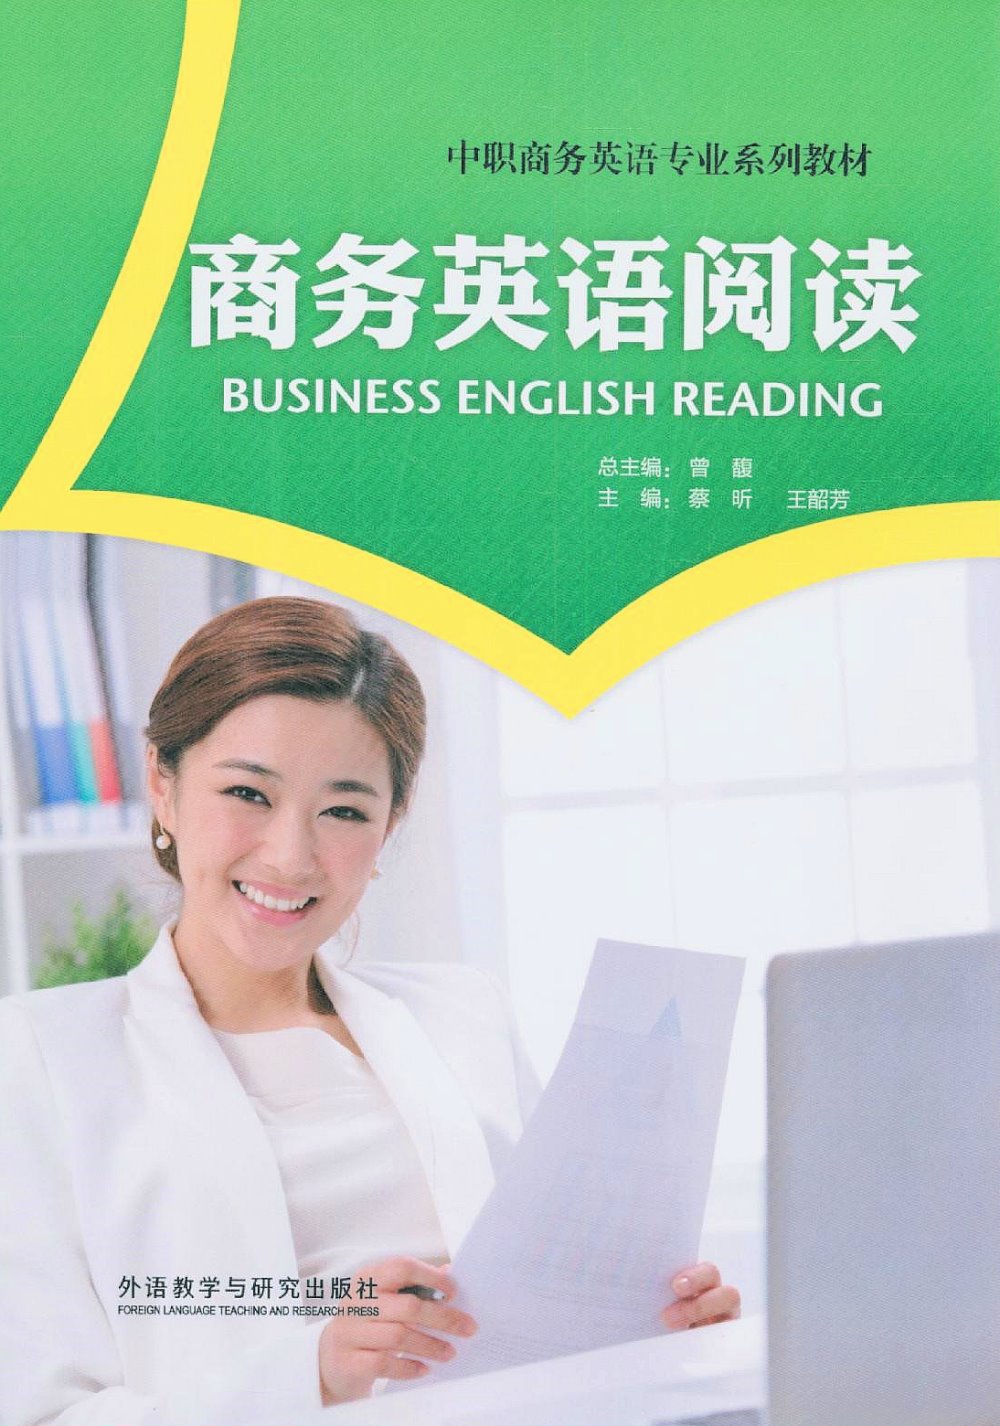 商務英語閱讀